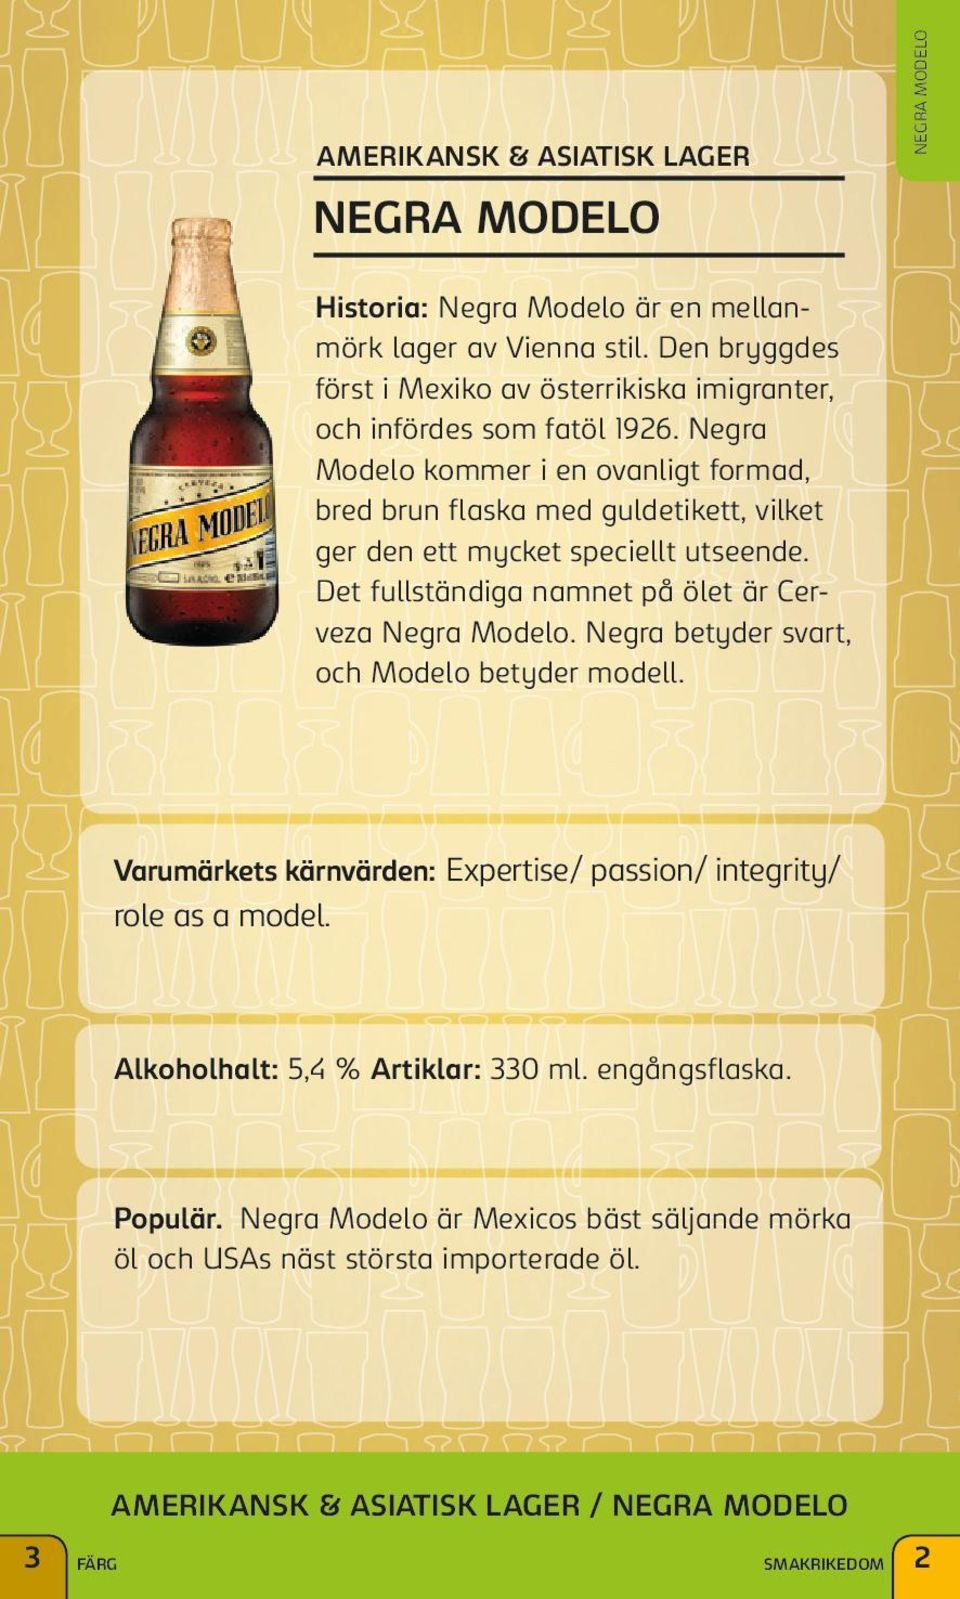 Negra Modelo kommer i en ovanligt formad, bred brun flaska med guldetikett, vilket ger den ett mycket speciellt utseende. Det fullständiga namnet på ölet är Cerveza Negra Modelo.